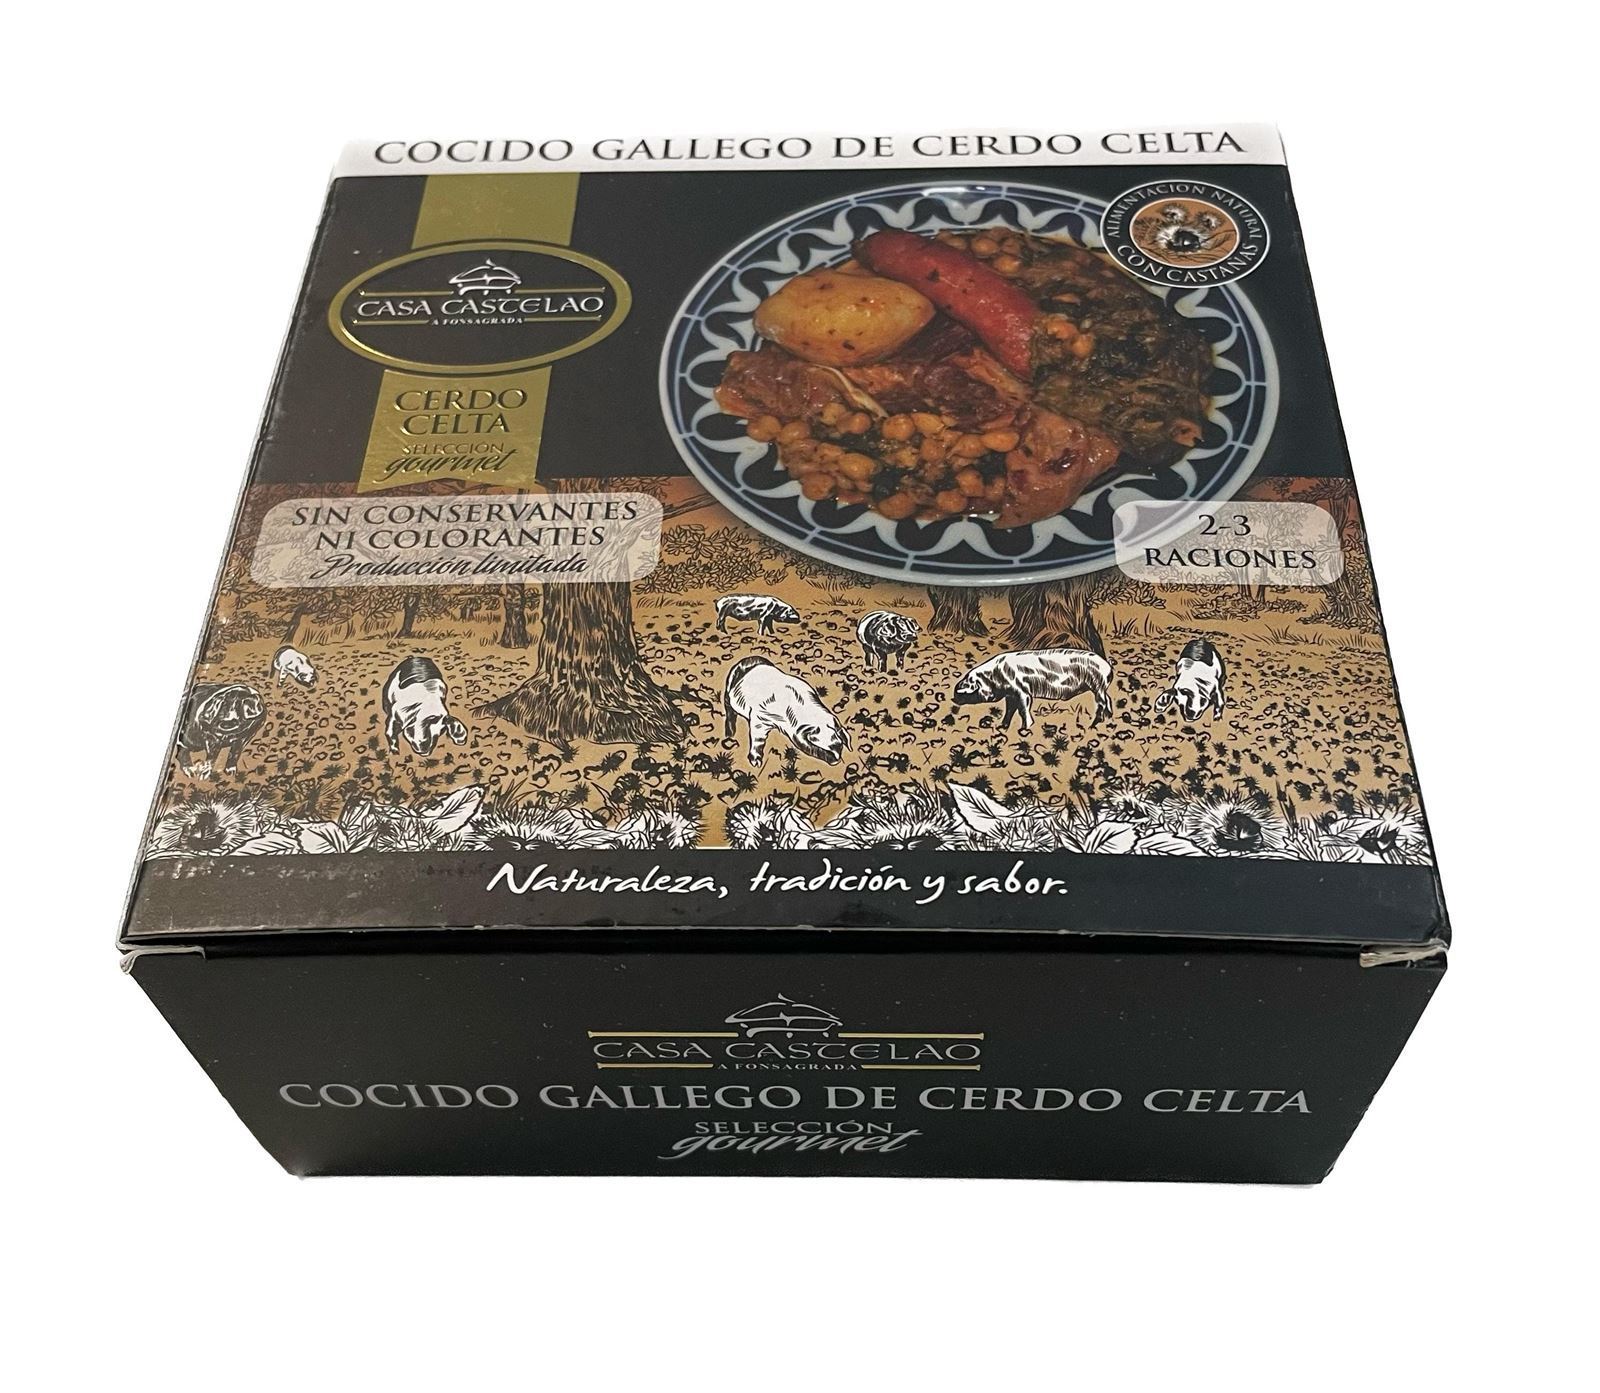 Cocido Gallego de Cerdo Celta Casa Castelao (Selección Gourmet) 1.200grs - Imagen 1